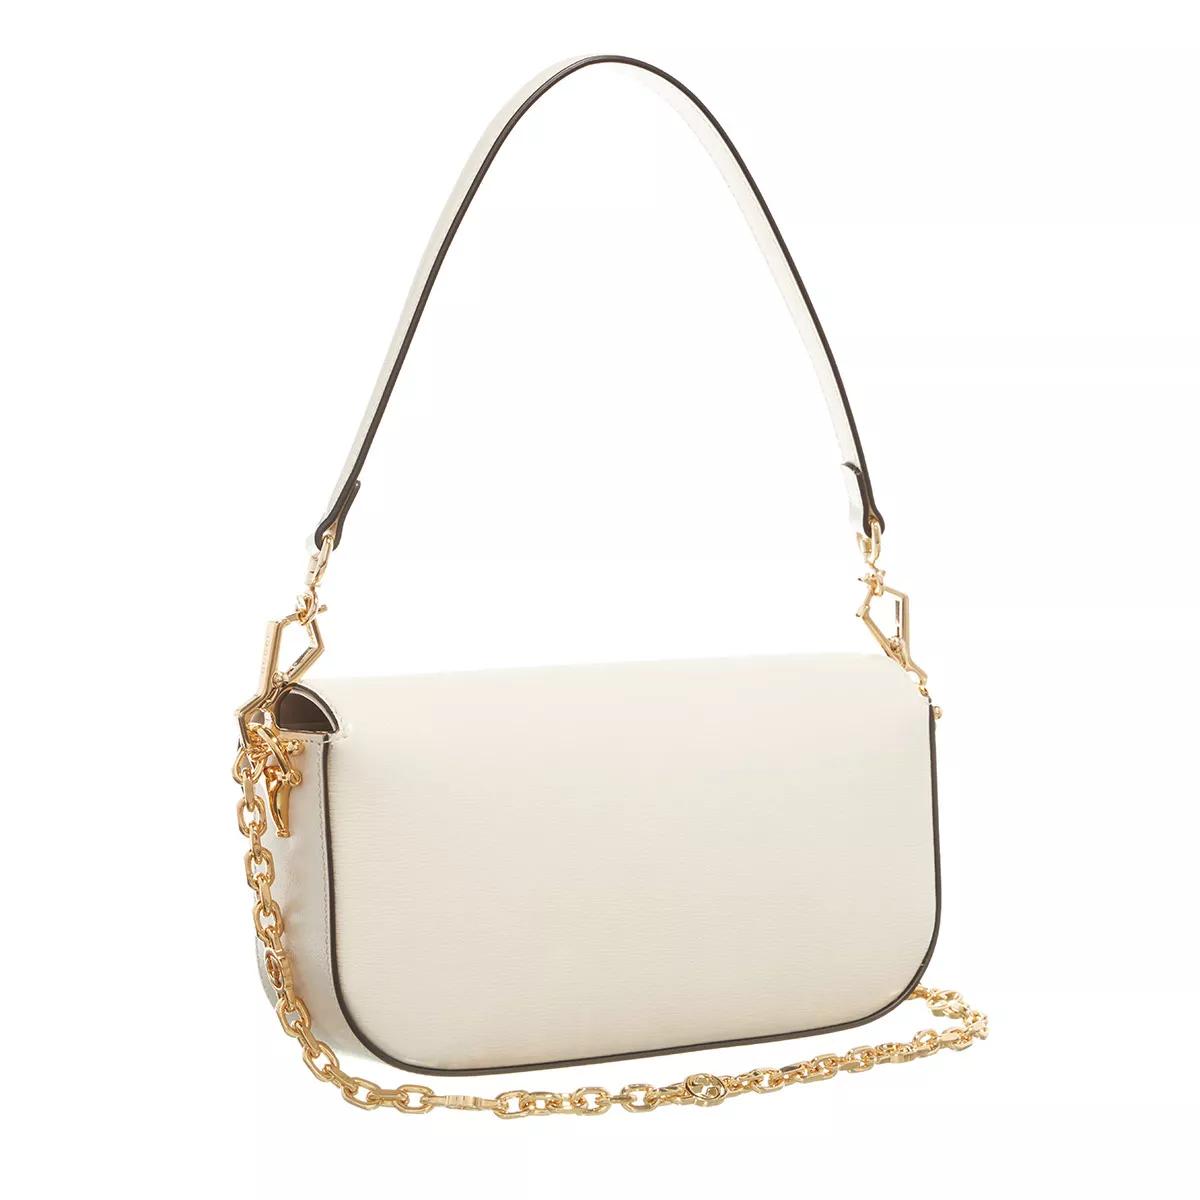 gucci bag big size handbag with chain sling